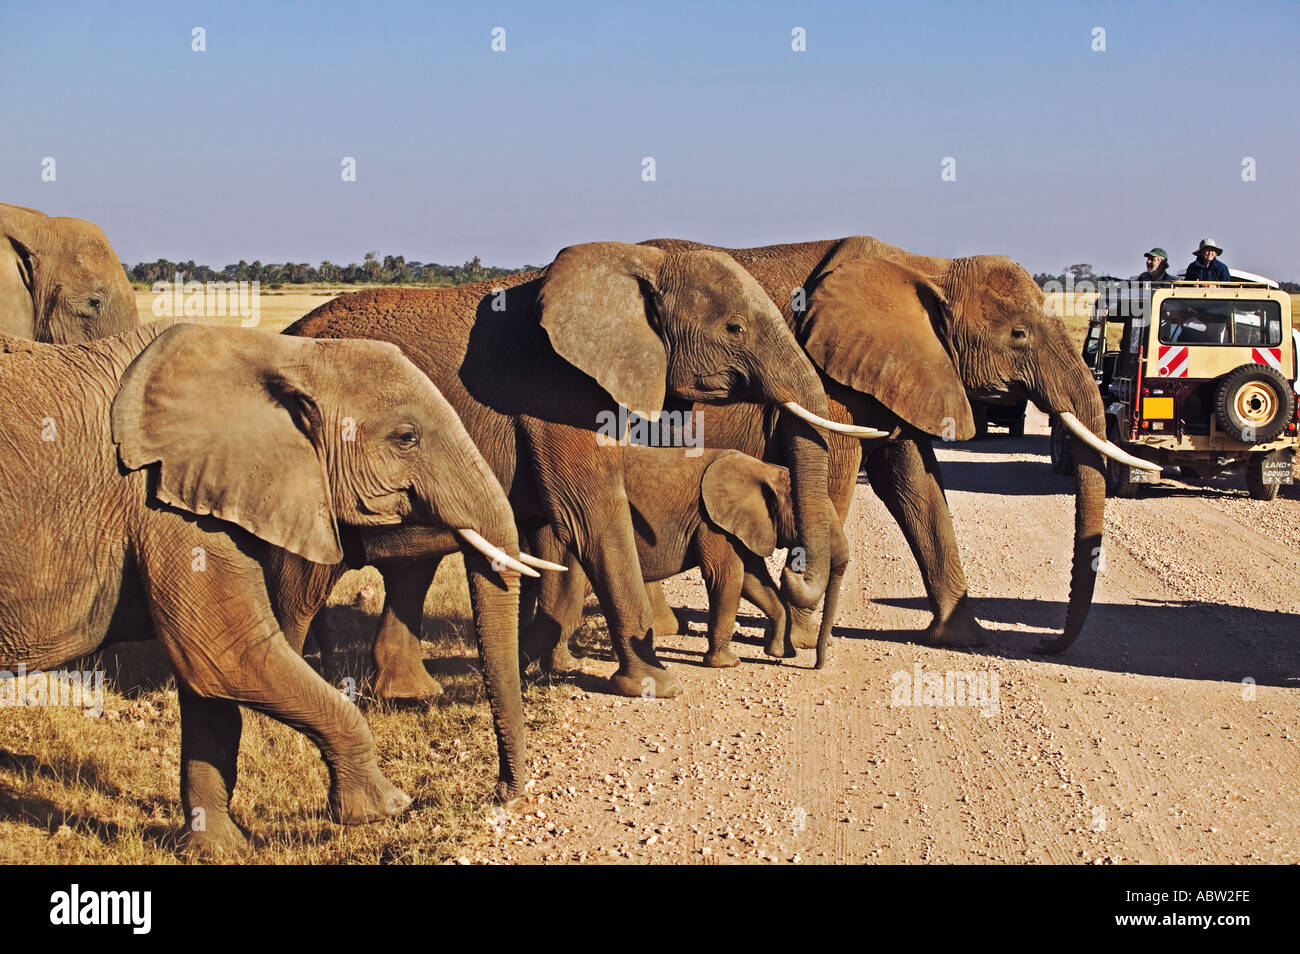 Tourism Tour vehicle with elephants Amboseli National Park Kenya Stock Photo